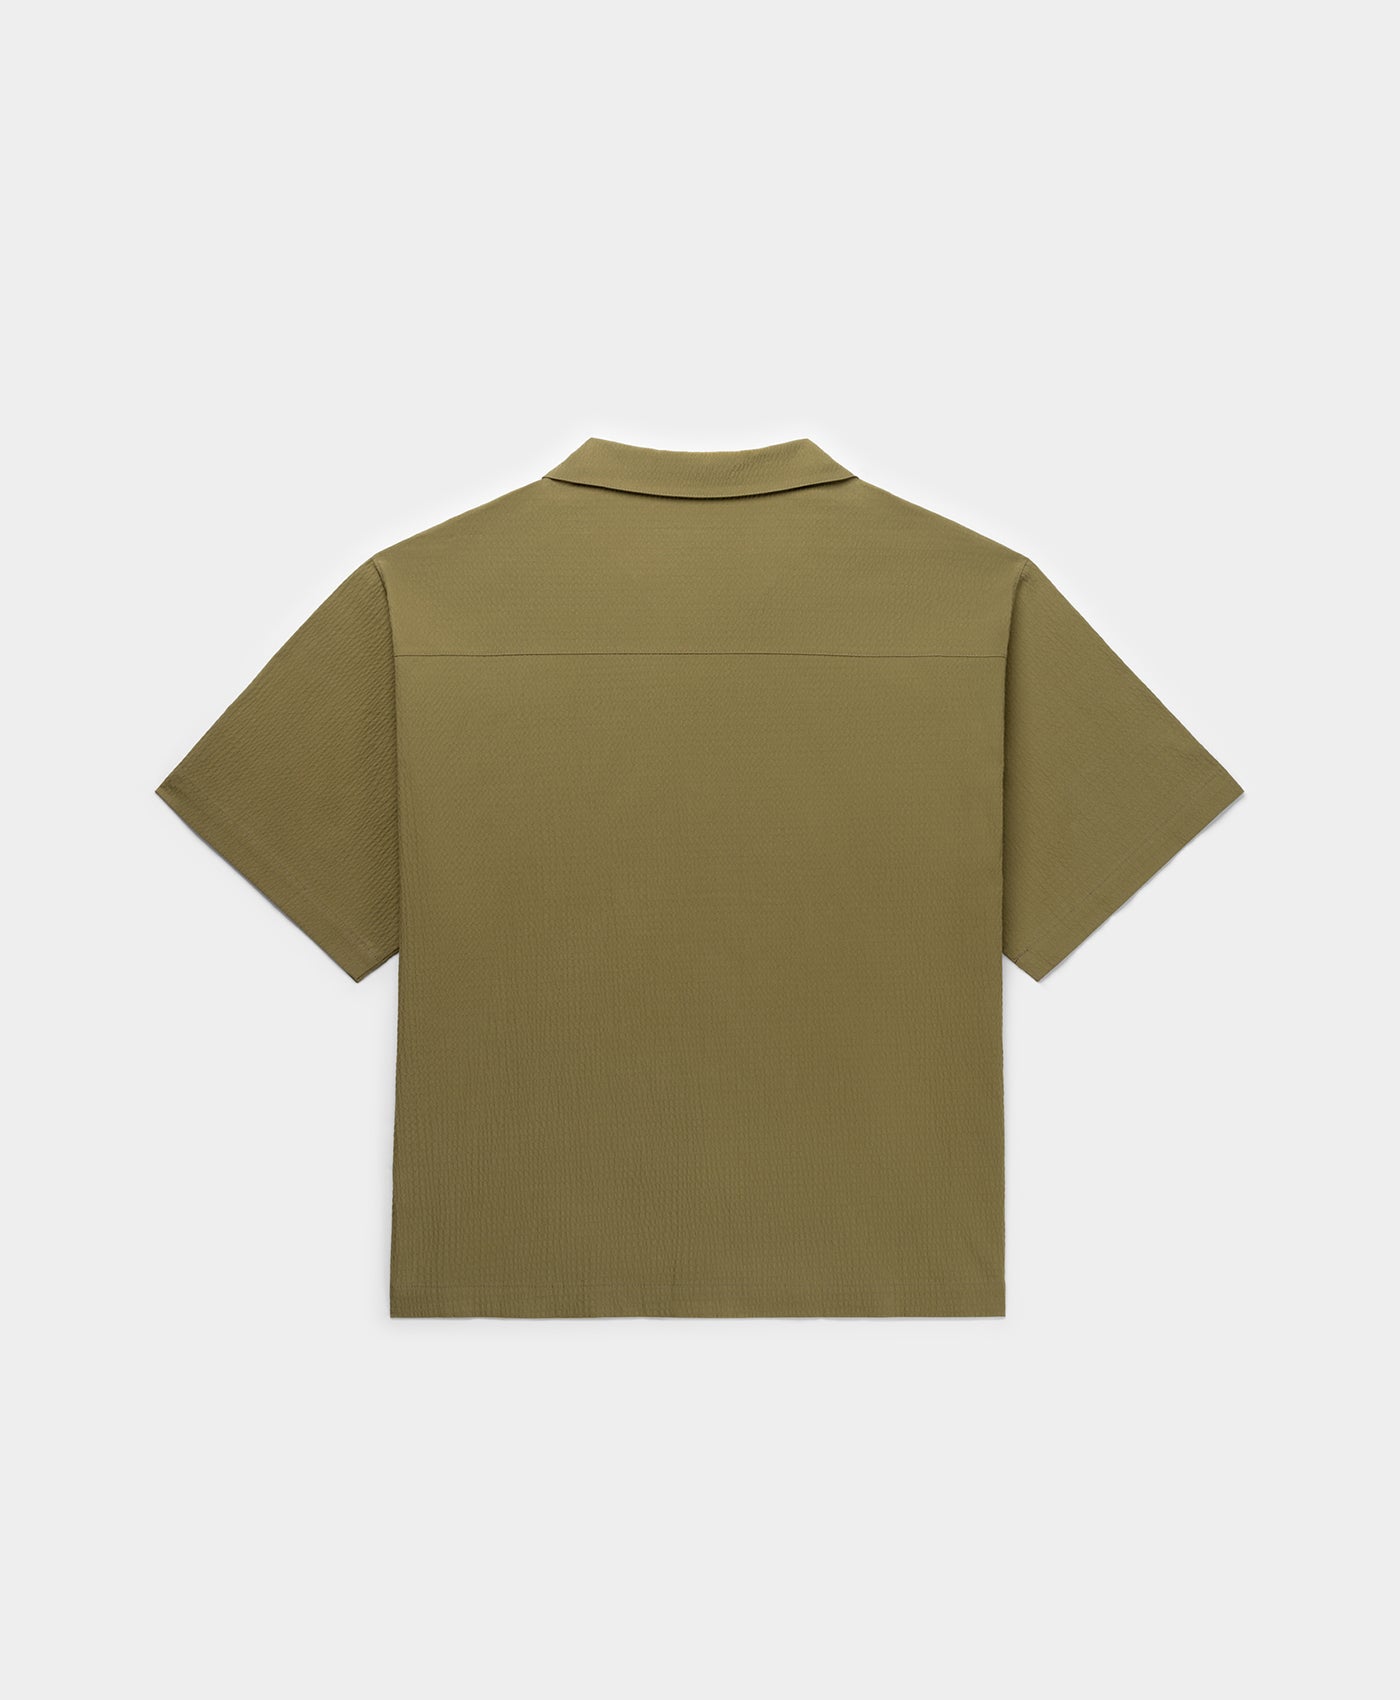 DP - Clover Green Pinira Shirt - Packshot - Rear